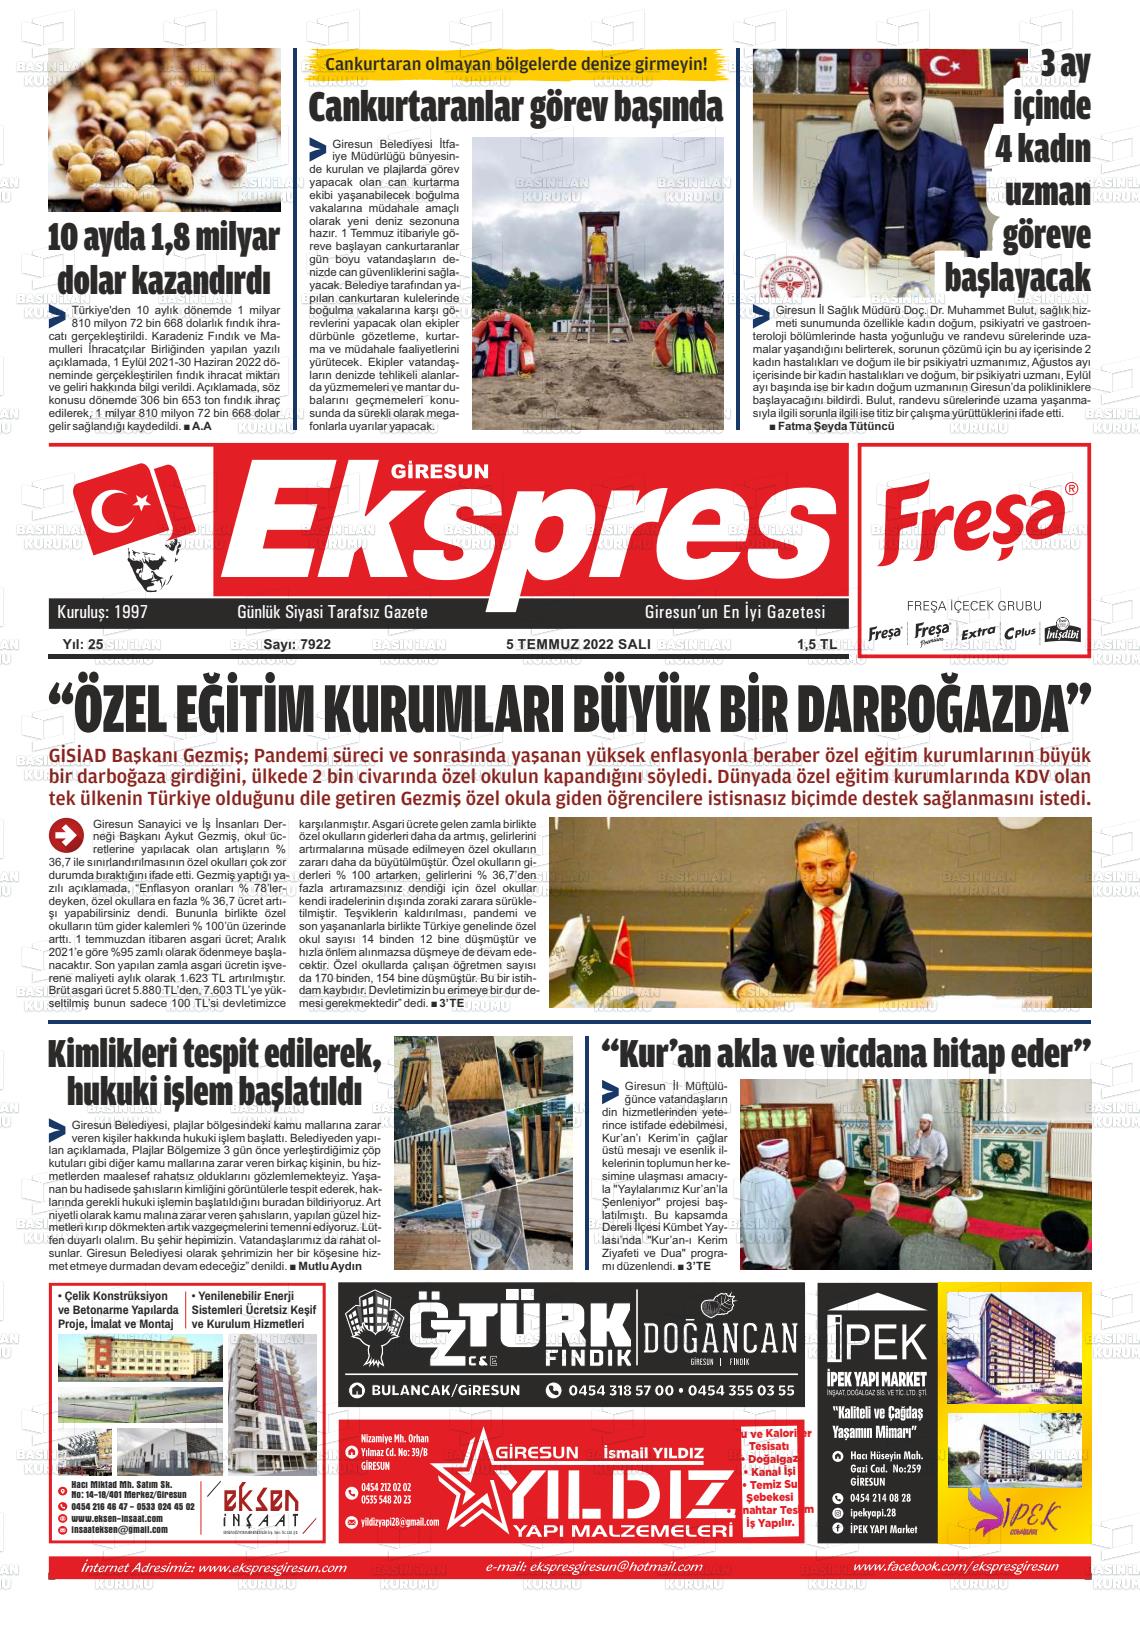 05 Temmuz 2022 Giresun Ekspres Gazete Manşeti